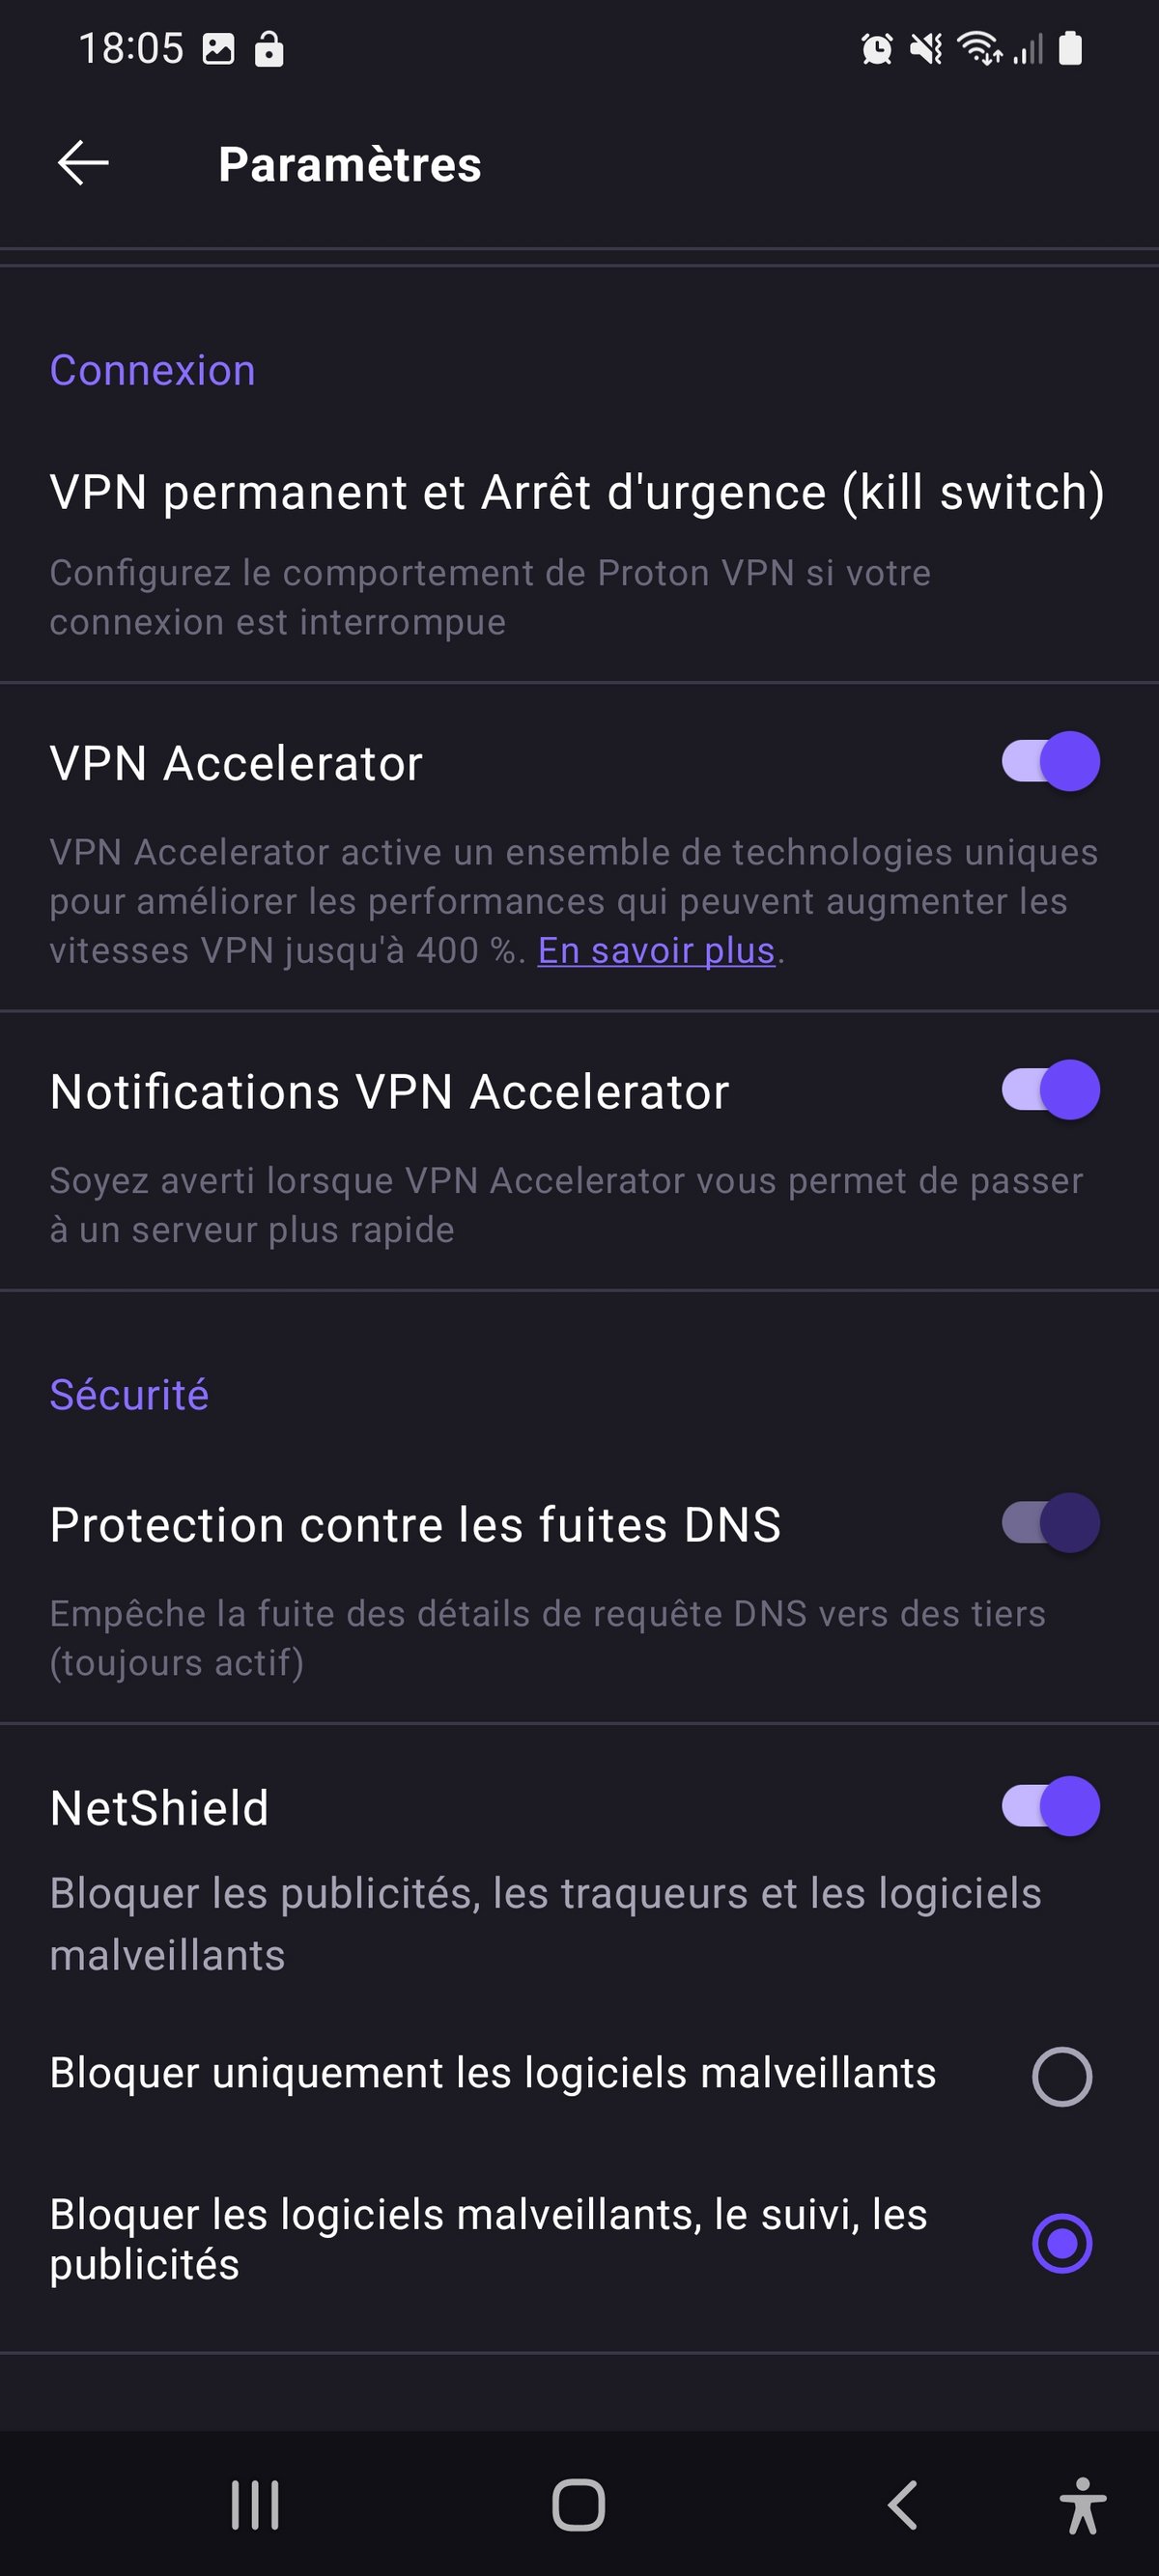 Proton VPN - Les paramètres du service sur Android